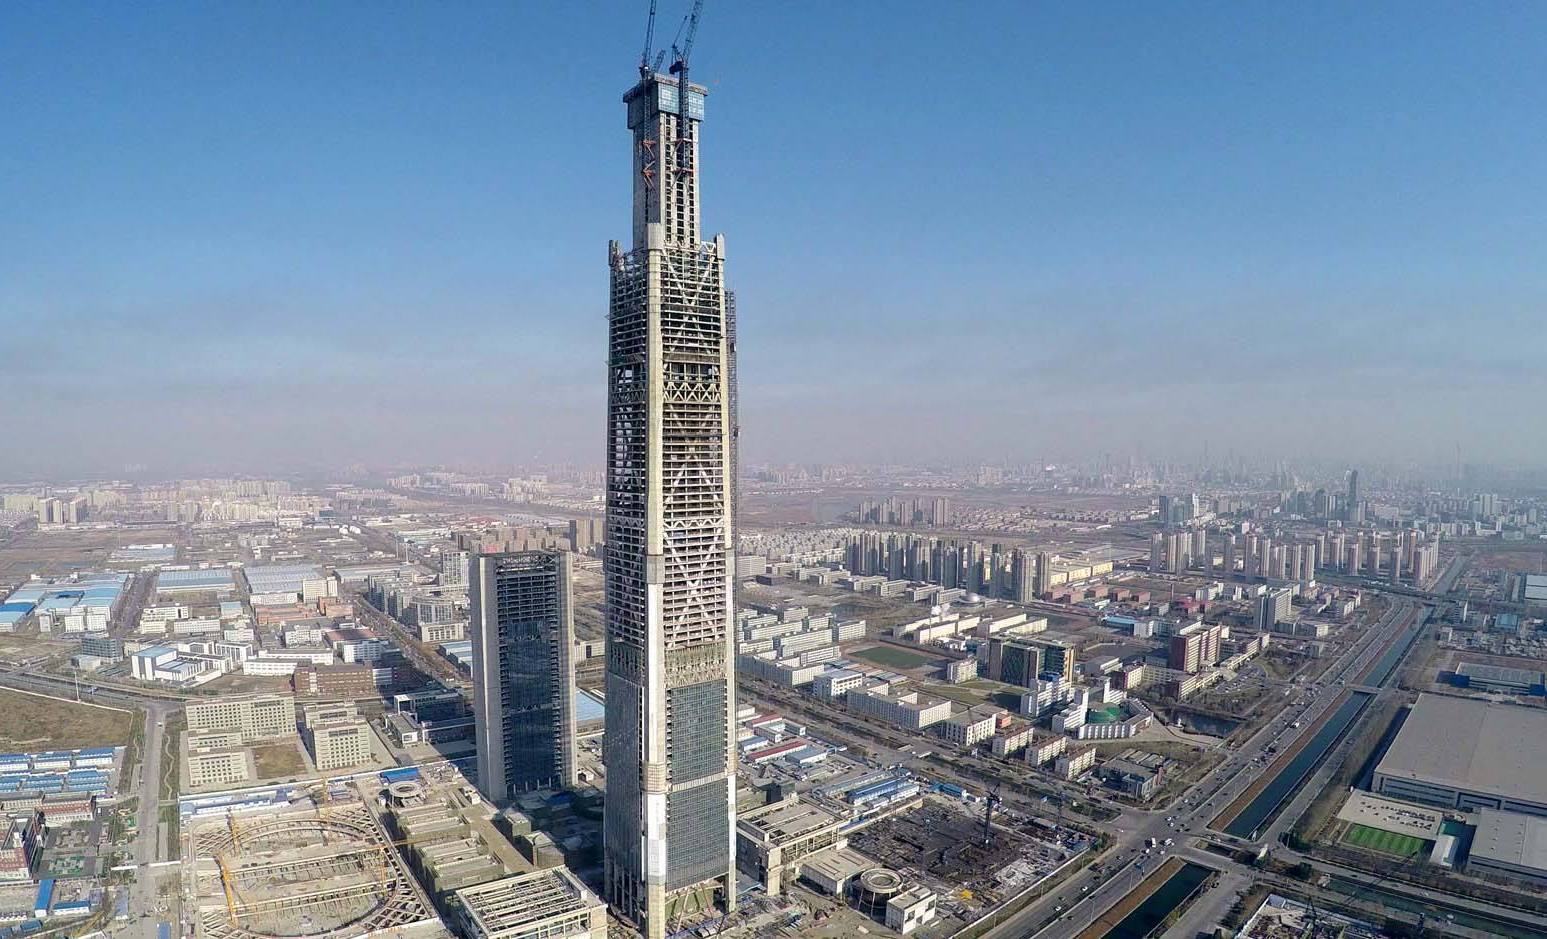 国内最低调的城市,500米以上高楼数量最多,不是上海也不是广州